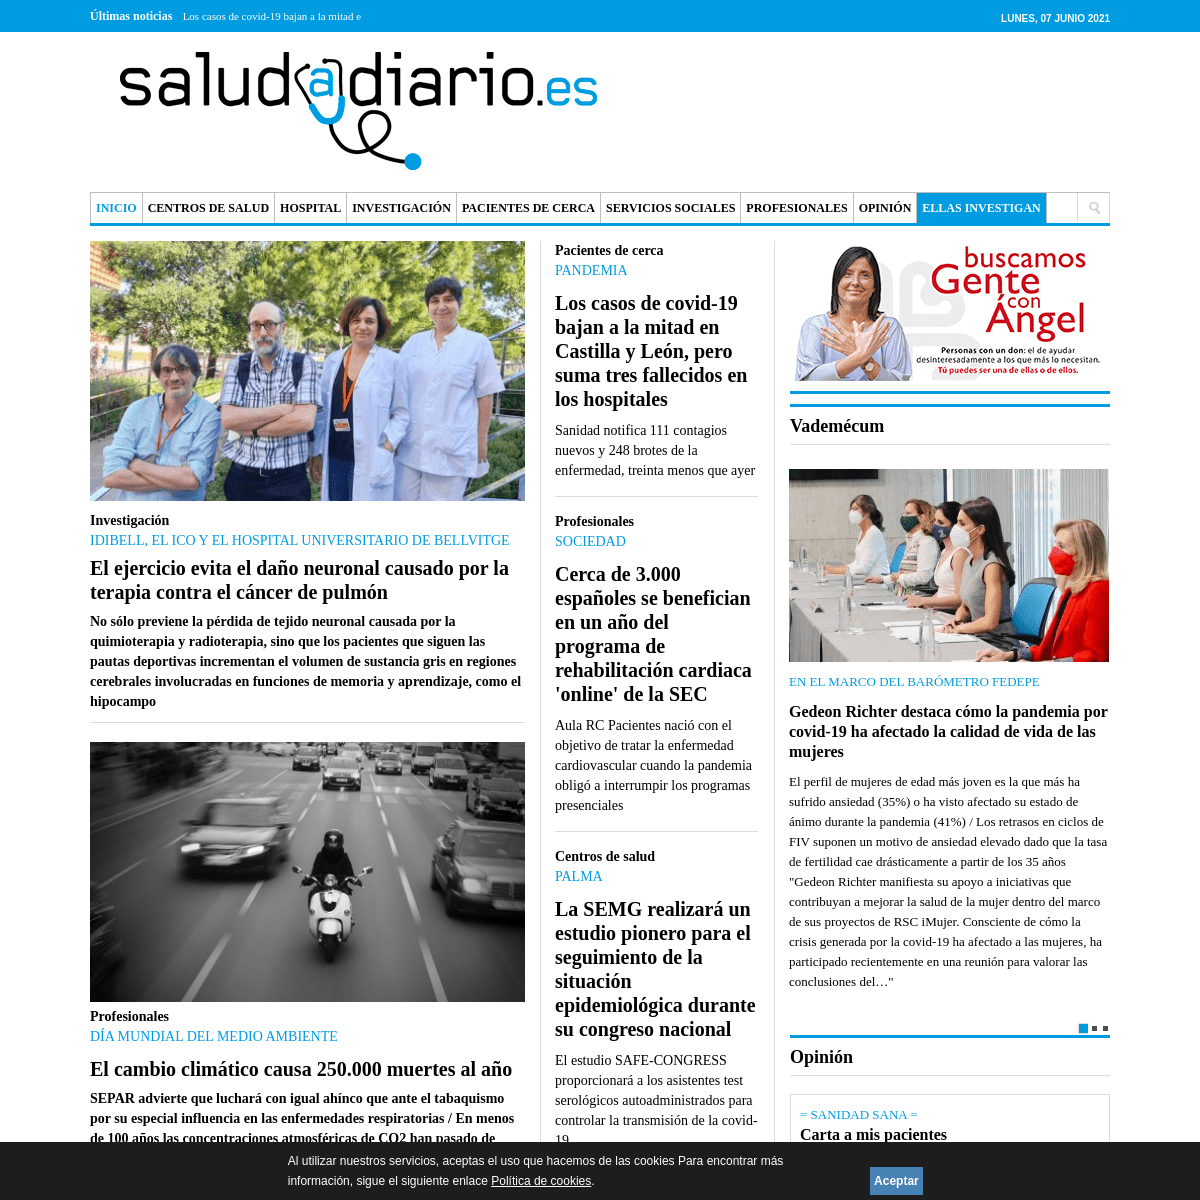 Salud a Diario - PeriÃ³dico digital de Sanidad, Salud y Servicios Sociales - Salud a Diario